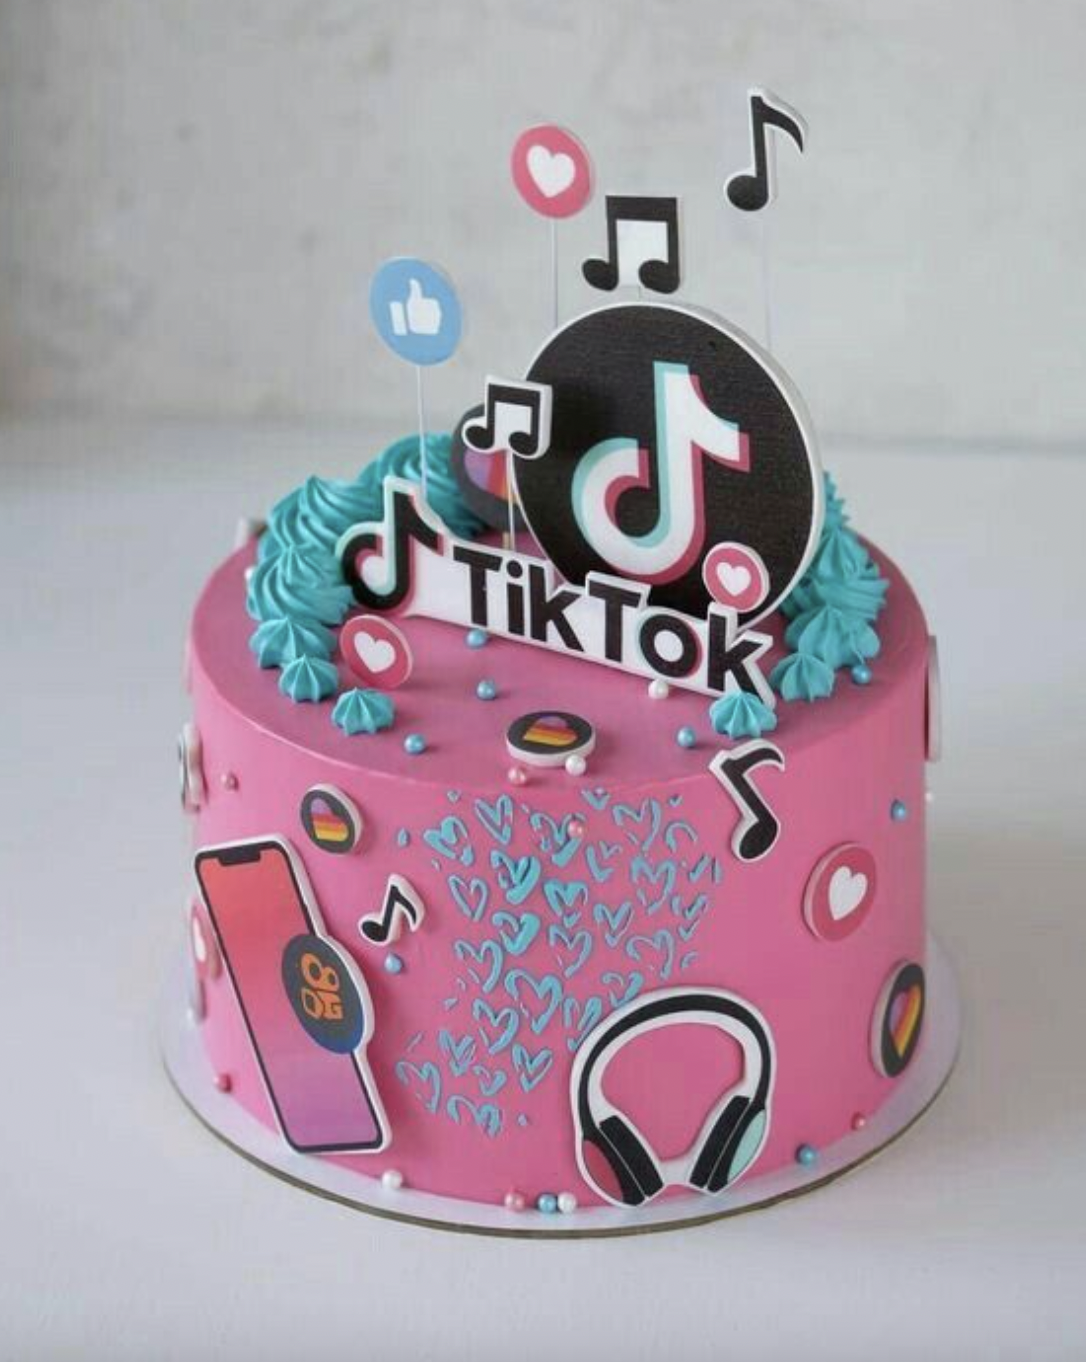 Te decimos cómo hacer el pastel de TikTok